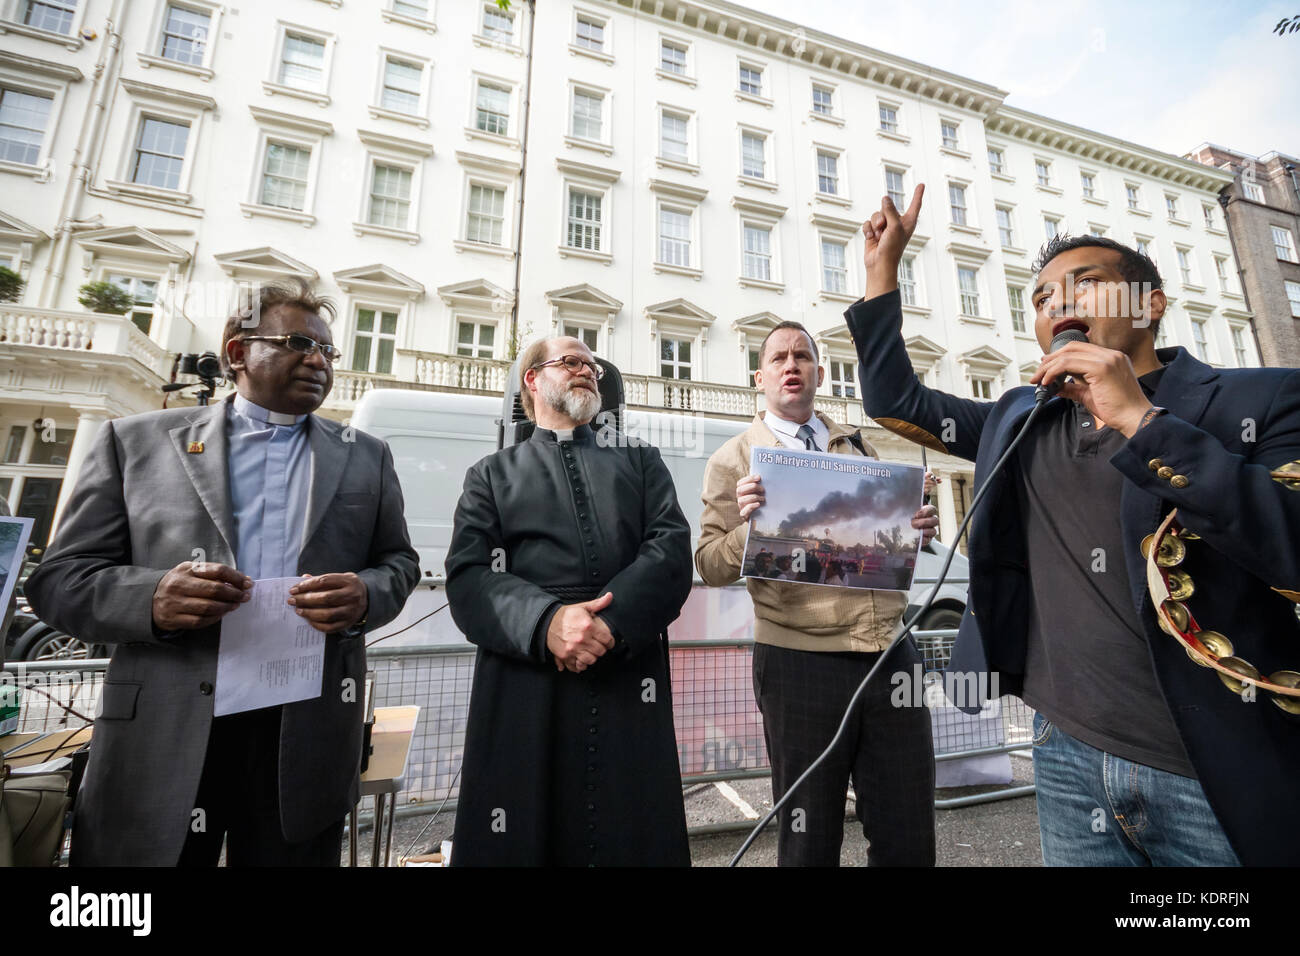 Britische pakistanischen Christen Protest außerhalb der Kommission von Pakistan in London, UK. Stockfoto